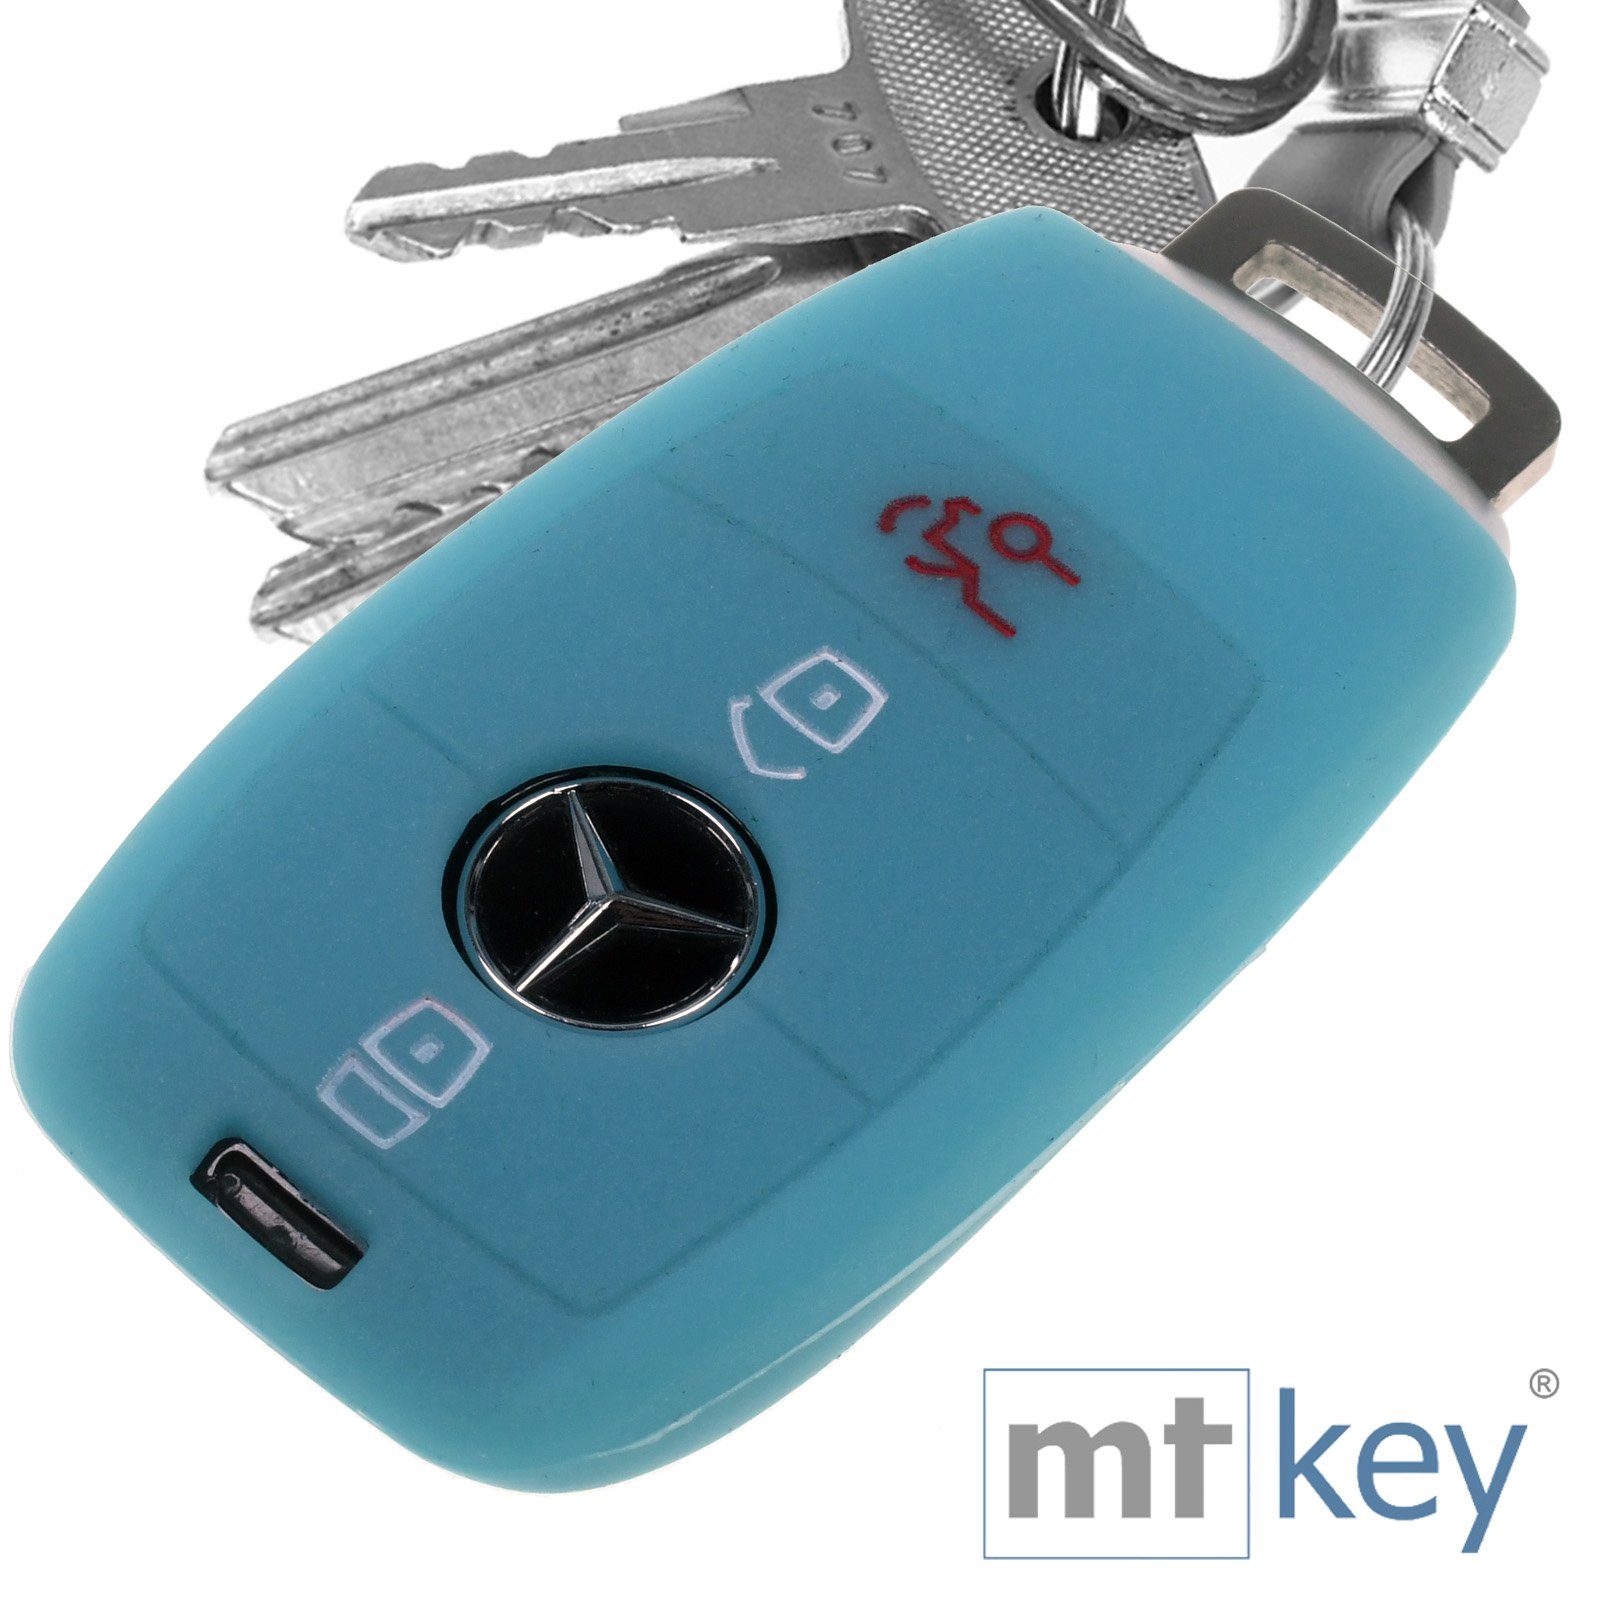 fluoreszierend S213 Blau, Schutzhülle Benz Mercedes KEYLESS 3 Autoschlüssel W213 A238 Silikon Softcase für mt-key E-Klasse Tasten C238 Schlüsseltasche